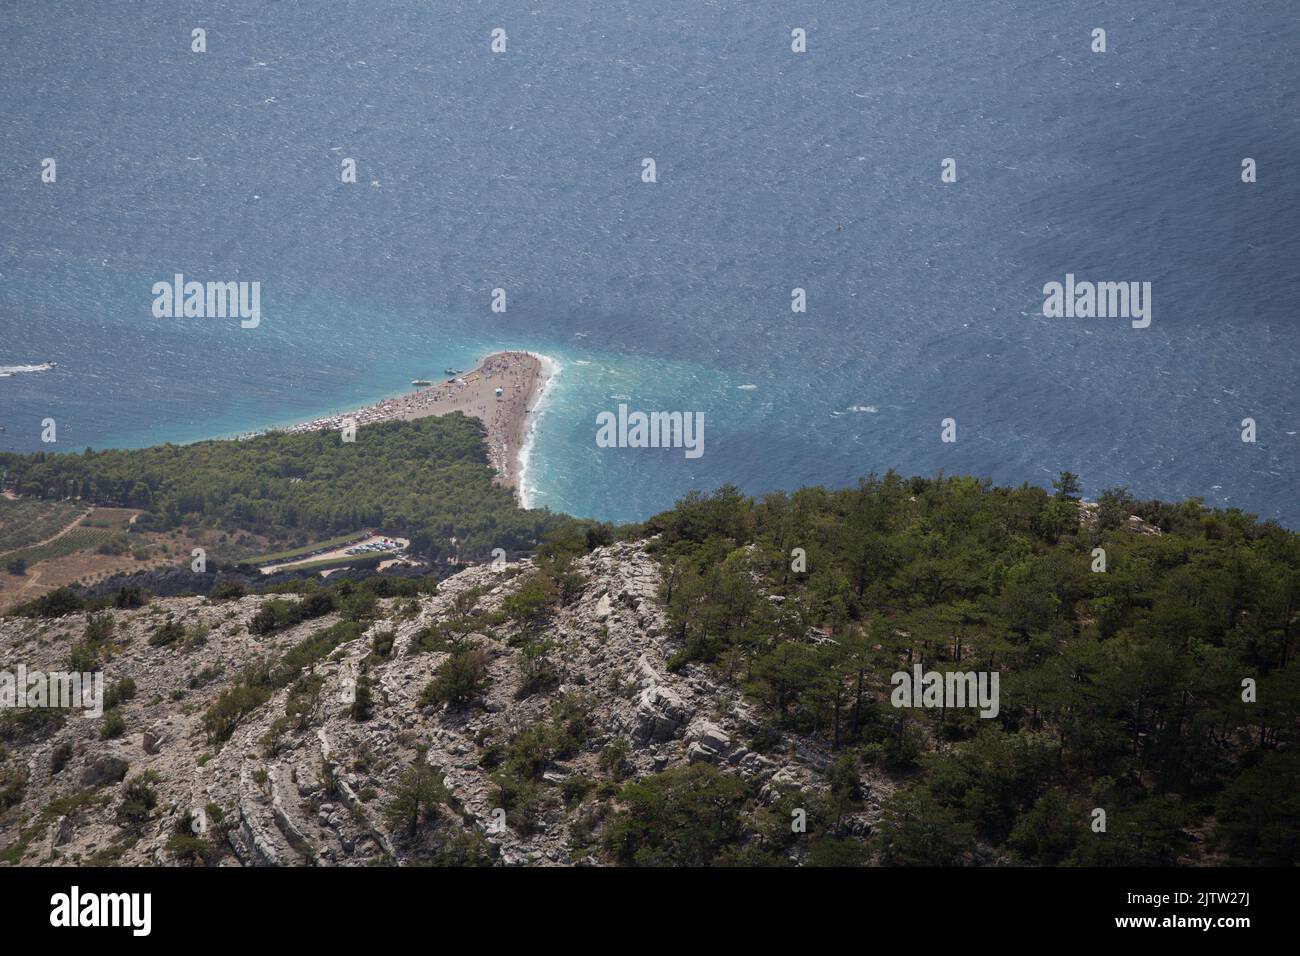 Luftaufnahme des Strandes Zlatni Rat (Goldenes Horn) von Vidova Gora, Kroatiens berühmtem Strand mit türkisfarbenem Wasser und umliegender rauer Landschaft Stockfoto